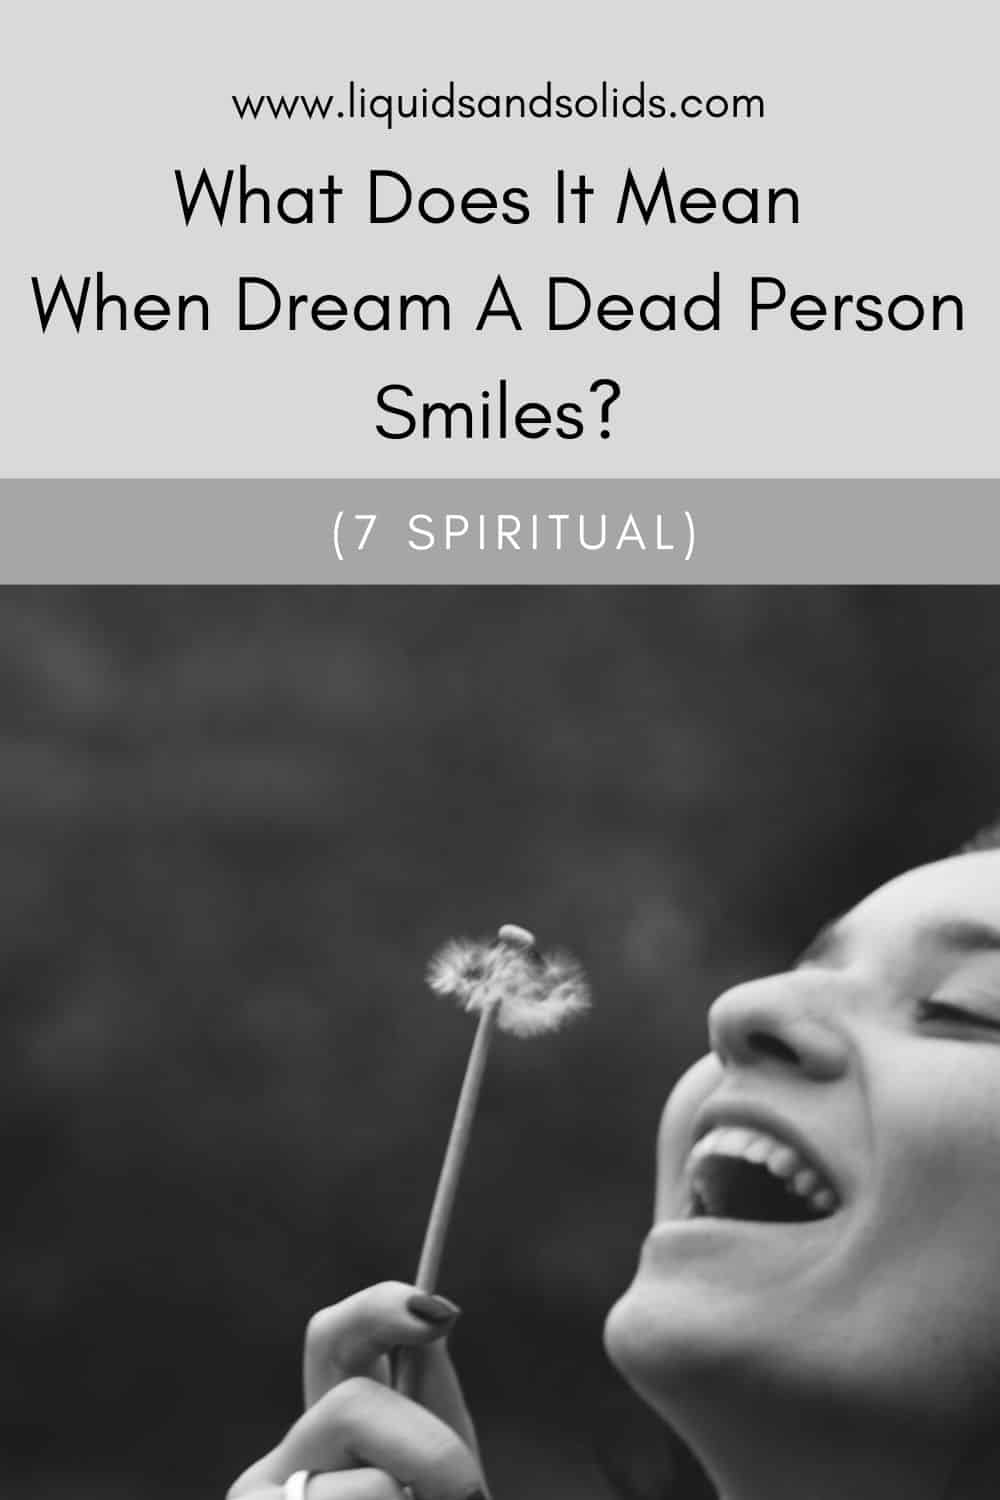  Ce que signifie le rêve d'un mort qui sourit (7 significations spirituelles)